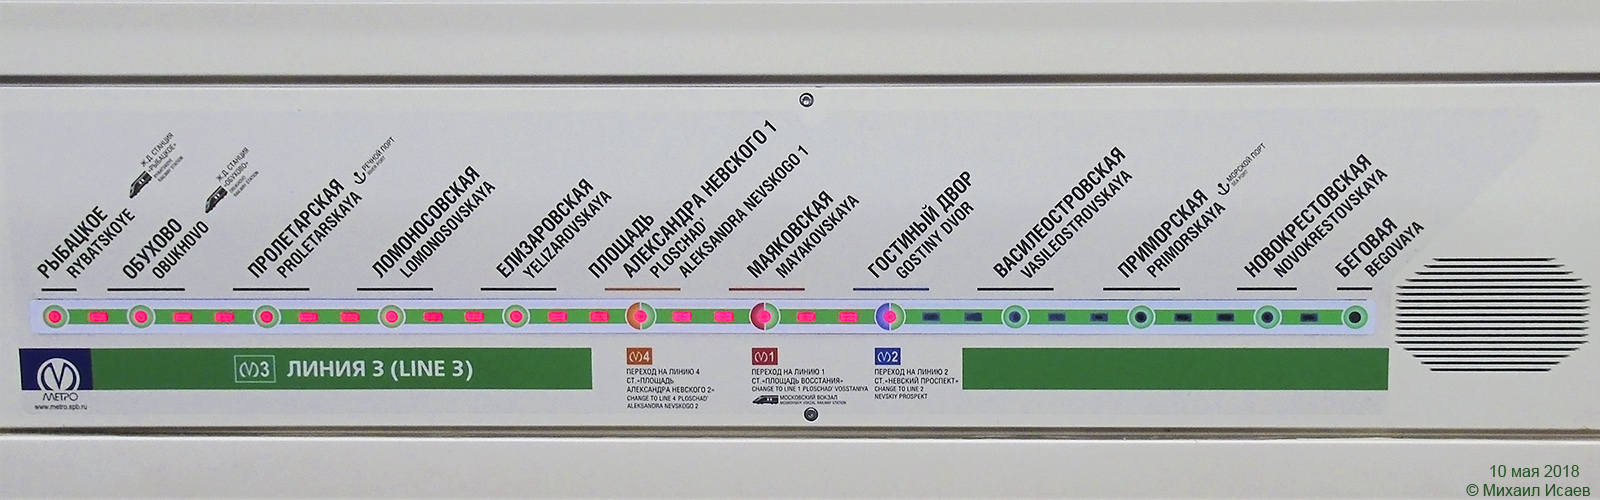 Saint-Petersburg, 81-722 “Yubileyny” č. 22022; Saint-Petersburg — Metro — Line 3; Saint-Petersburg — Metro — Maps; Saint-Petersburg — Metro — Vehicles — Type 81-722/723/724 "Yubileyniy"